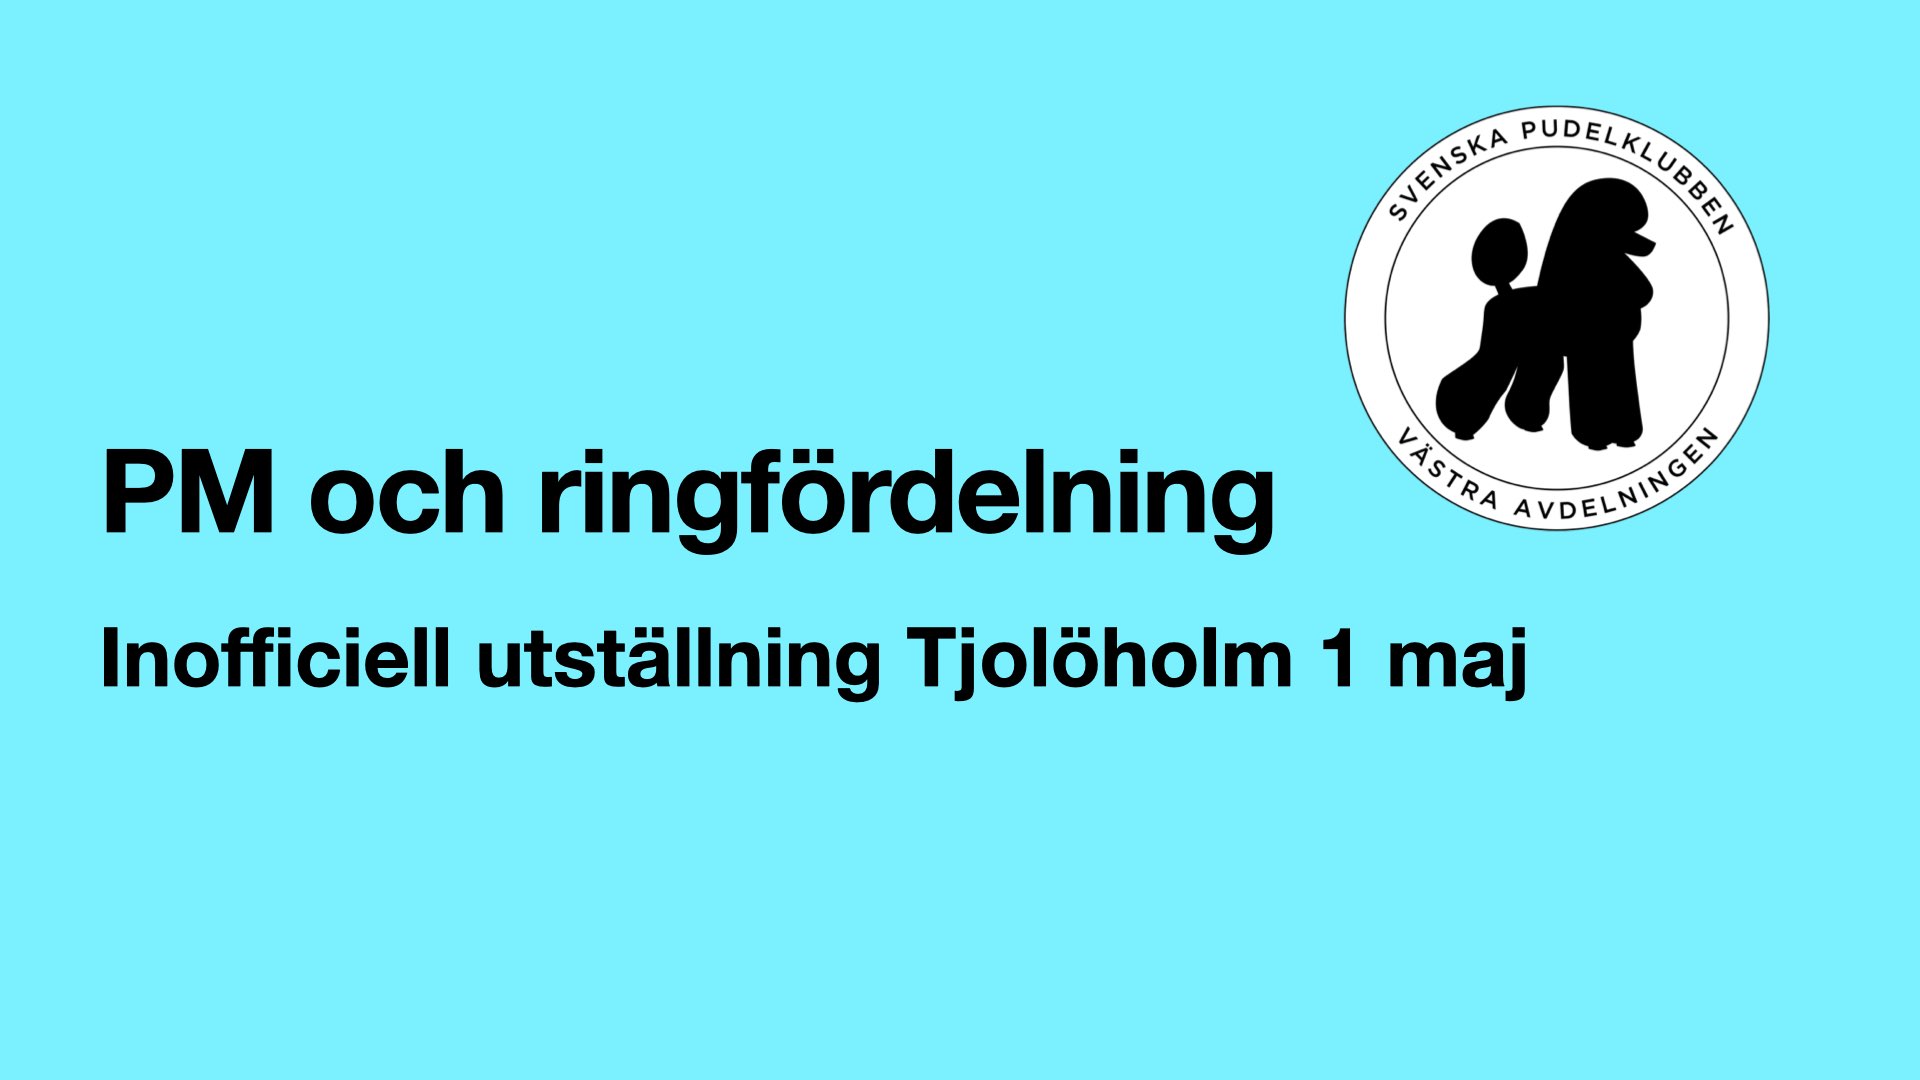 PM och ringfördelning utställning Tjolöholm 1 maj